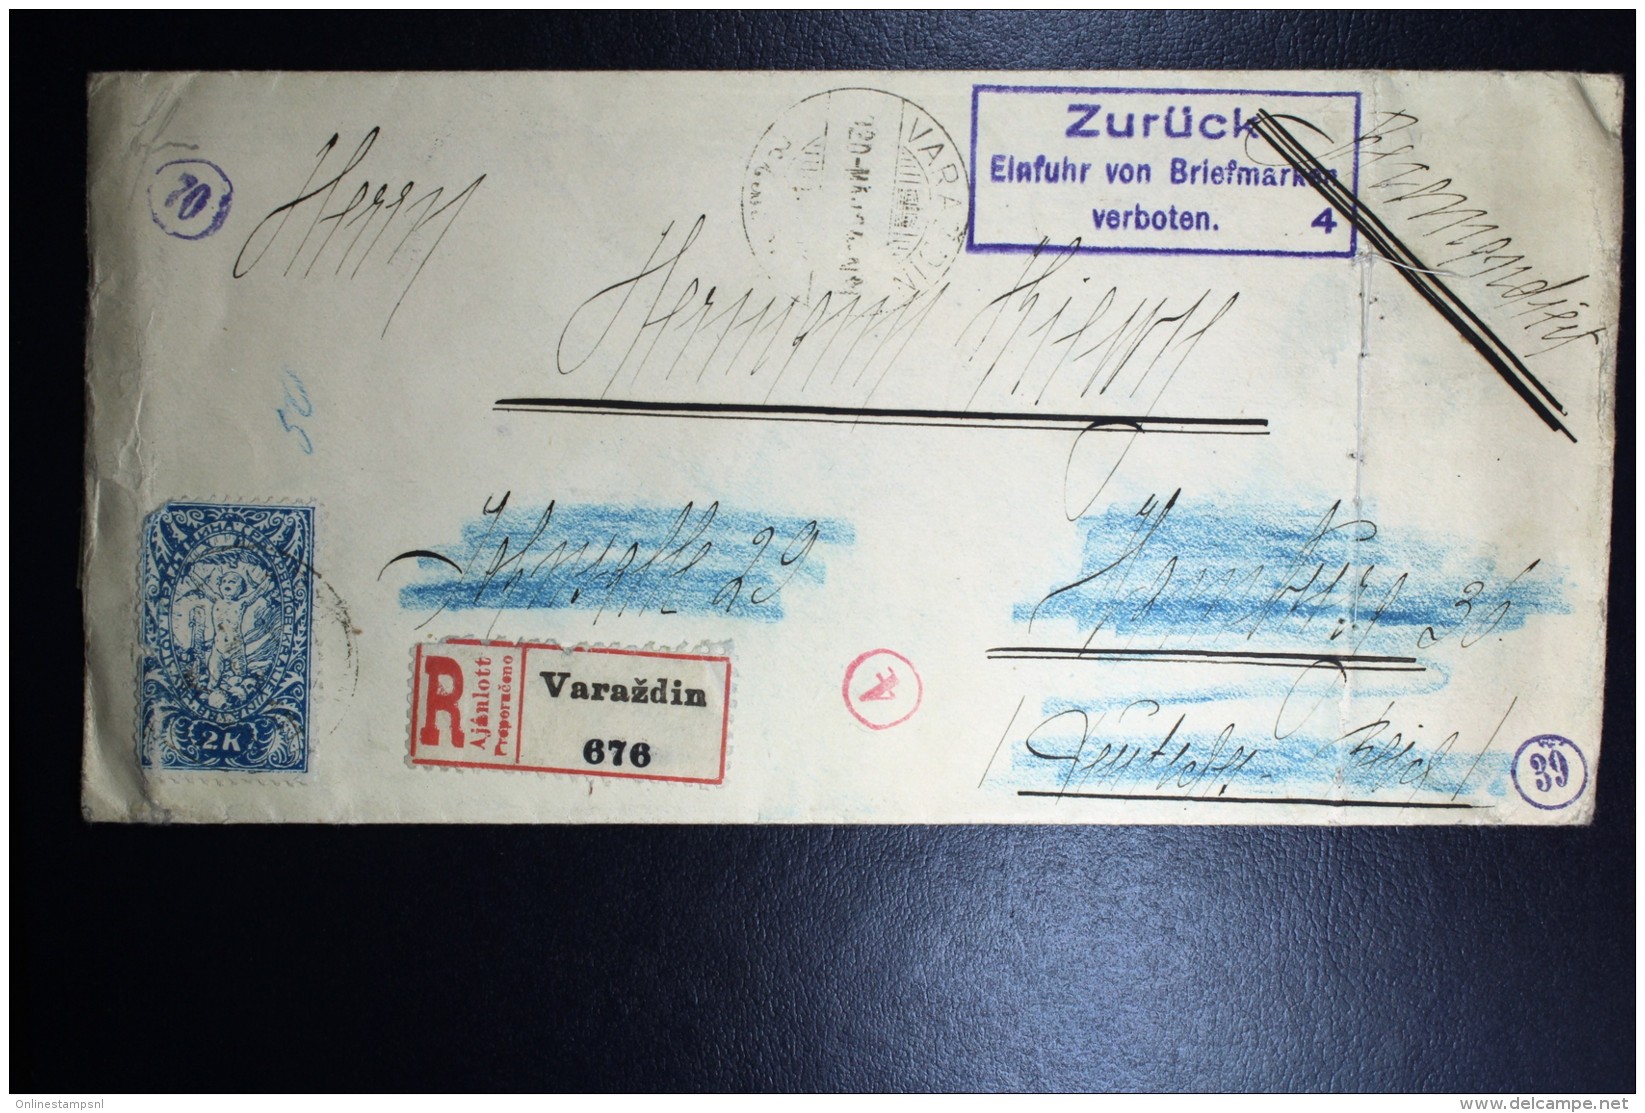 Deutschland: Cover From Croatia,  Zuruck Einführ Von Briefmarken Verboten + Slip At Backside!  RRR - Briefe U. Dokumente